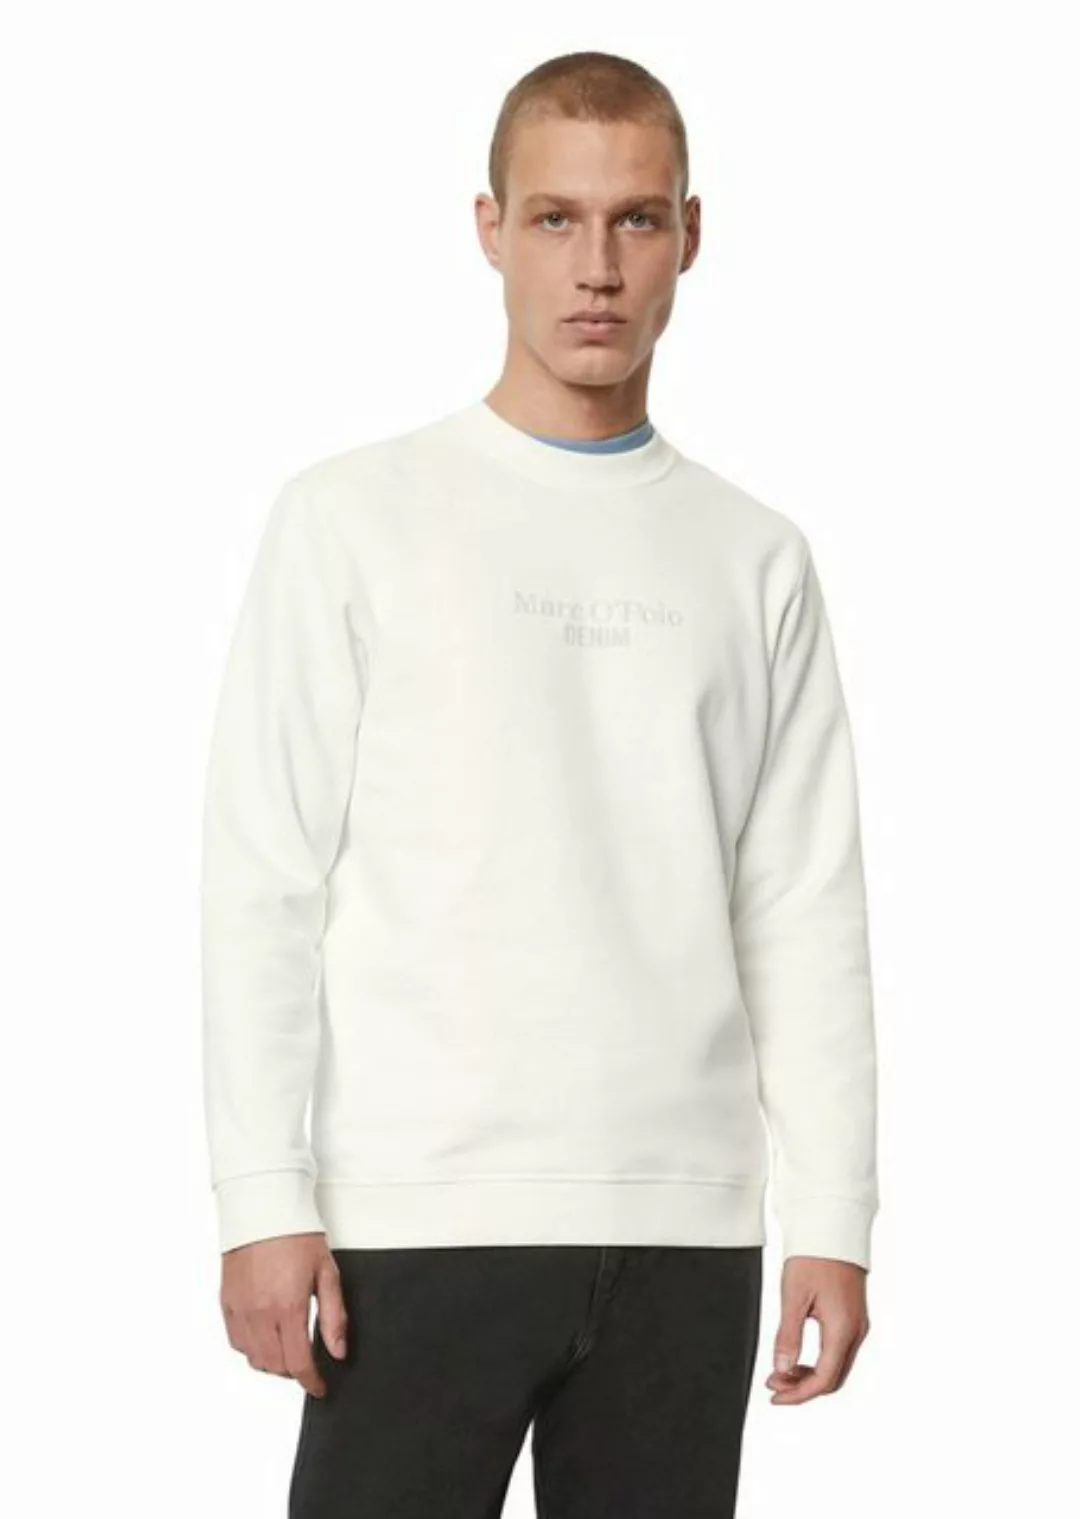 Marc O'Polo DENIM Sweatshirt aus reiner Bio-Baumwolle günstig online kaufen